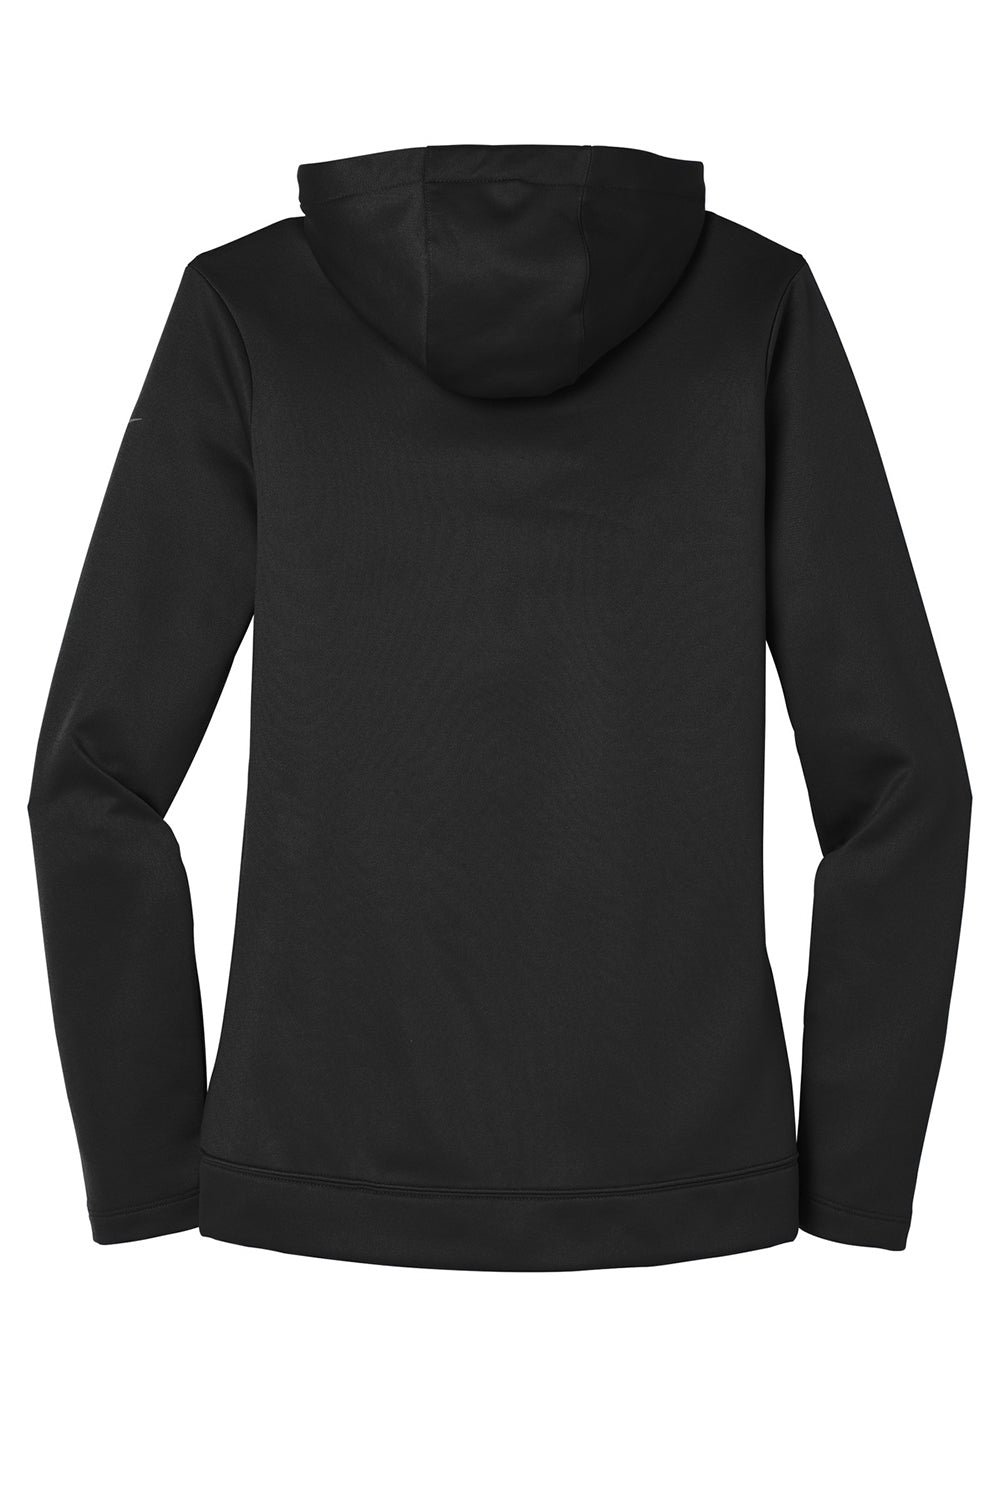 Nike NKAH6264 Womens Therma-Fit Moisture Wicking Fleece Full Zip Hooded Sweatshirt Hoodie Black Flat Back